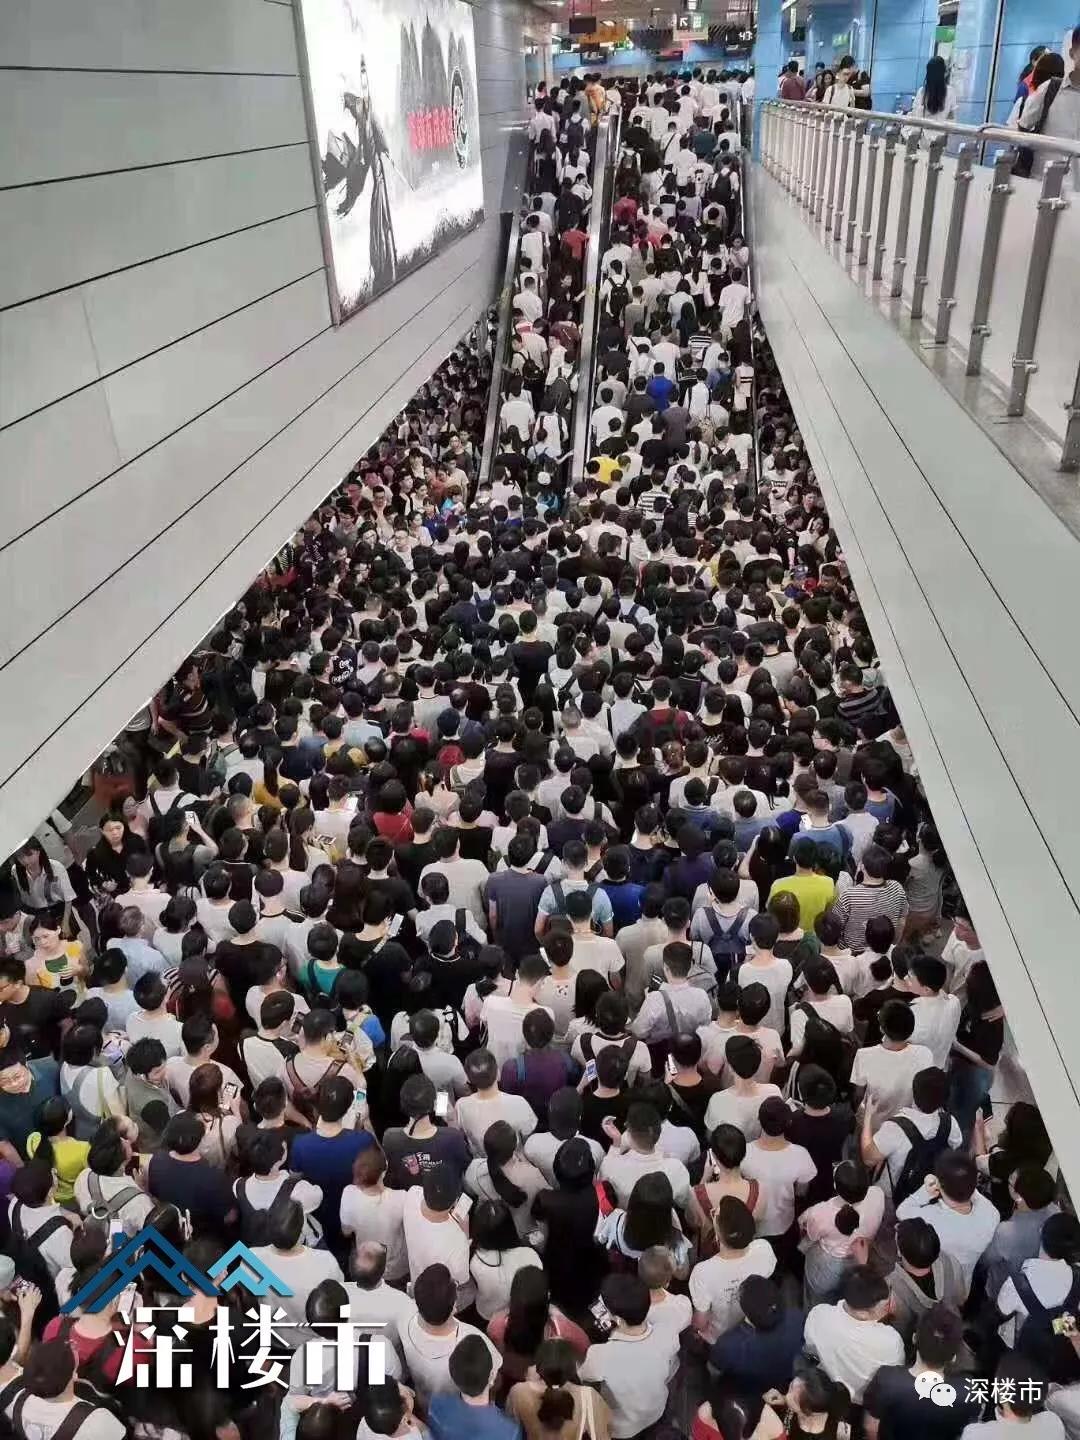 深圳最挤的地铁线非1号线莫属,不接受反驳!